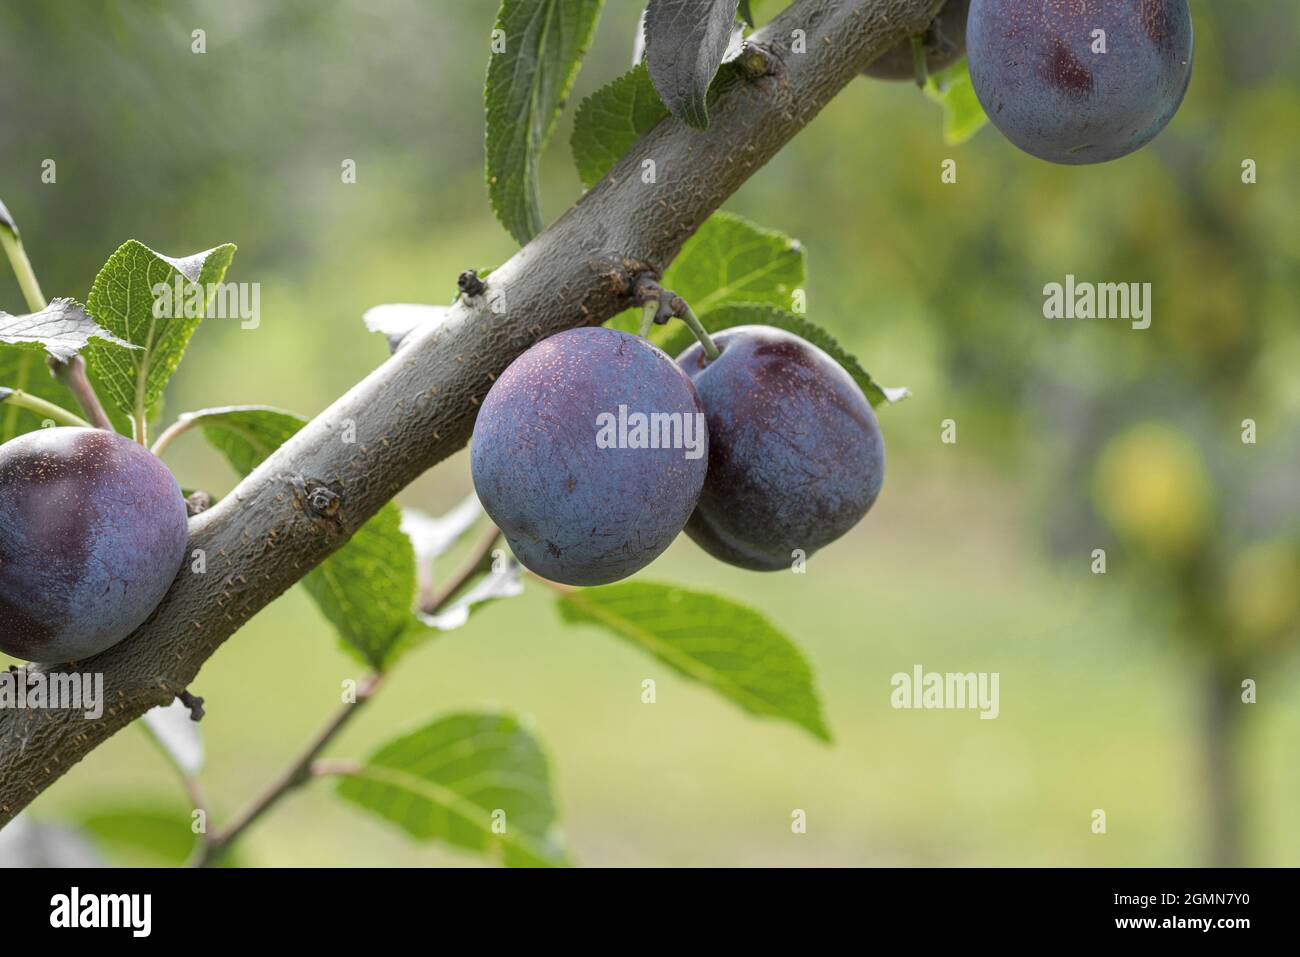 Europäische Pflaume (Prunus domestica 'Anna Spaeth', Prunus domestica Anna Spaeth), Pflaumen auf einem Zweig, Sorte Anna Spaeth, Deutschland Stockfoto